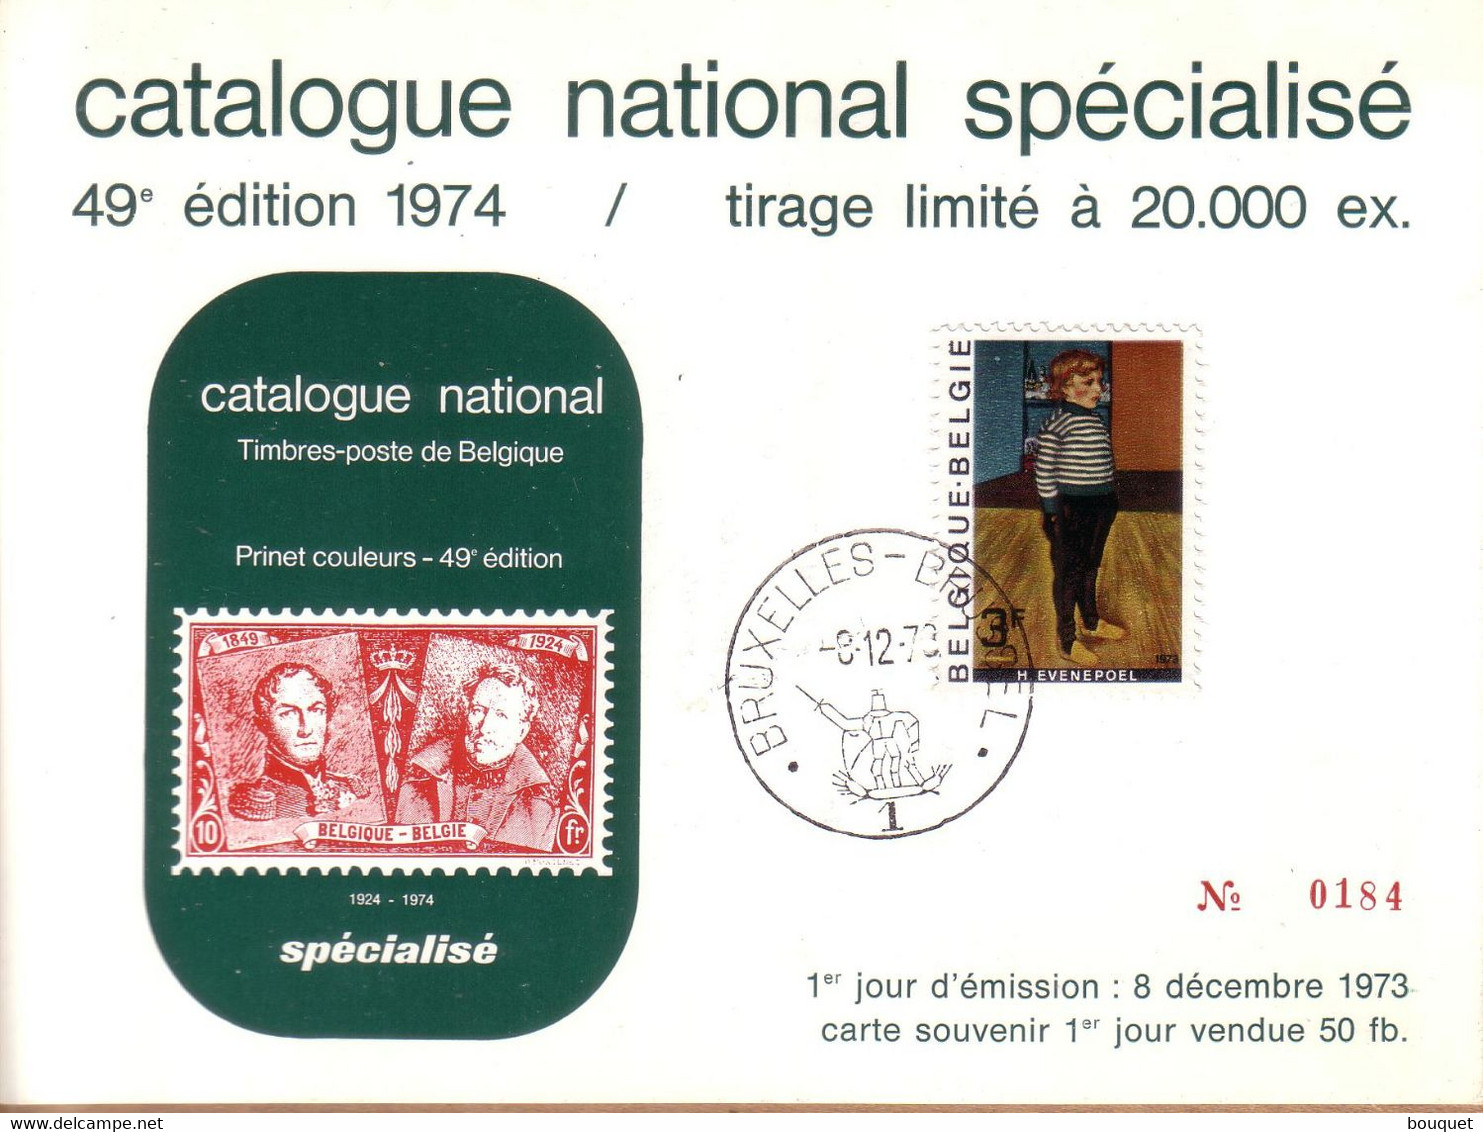 BELGIQUE - CARTE SOUVENIR CATALOGUE NATIONAL BRUXELLES , 1ER JOUR 8 DECEMBRE 1973 , 3 F H. EVENEPOEL - Cartoline Commemorative - Emissioni Congiunte [HK]